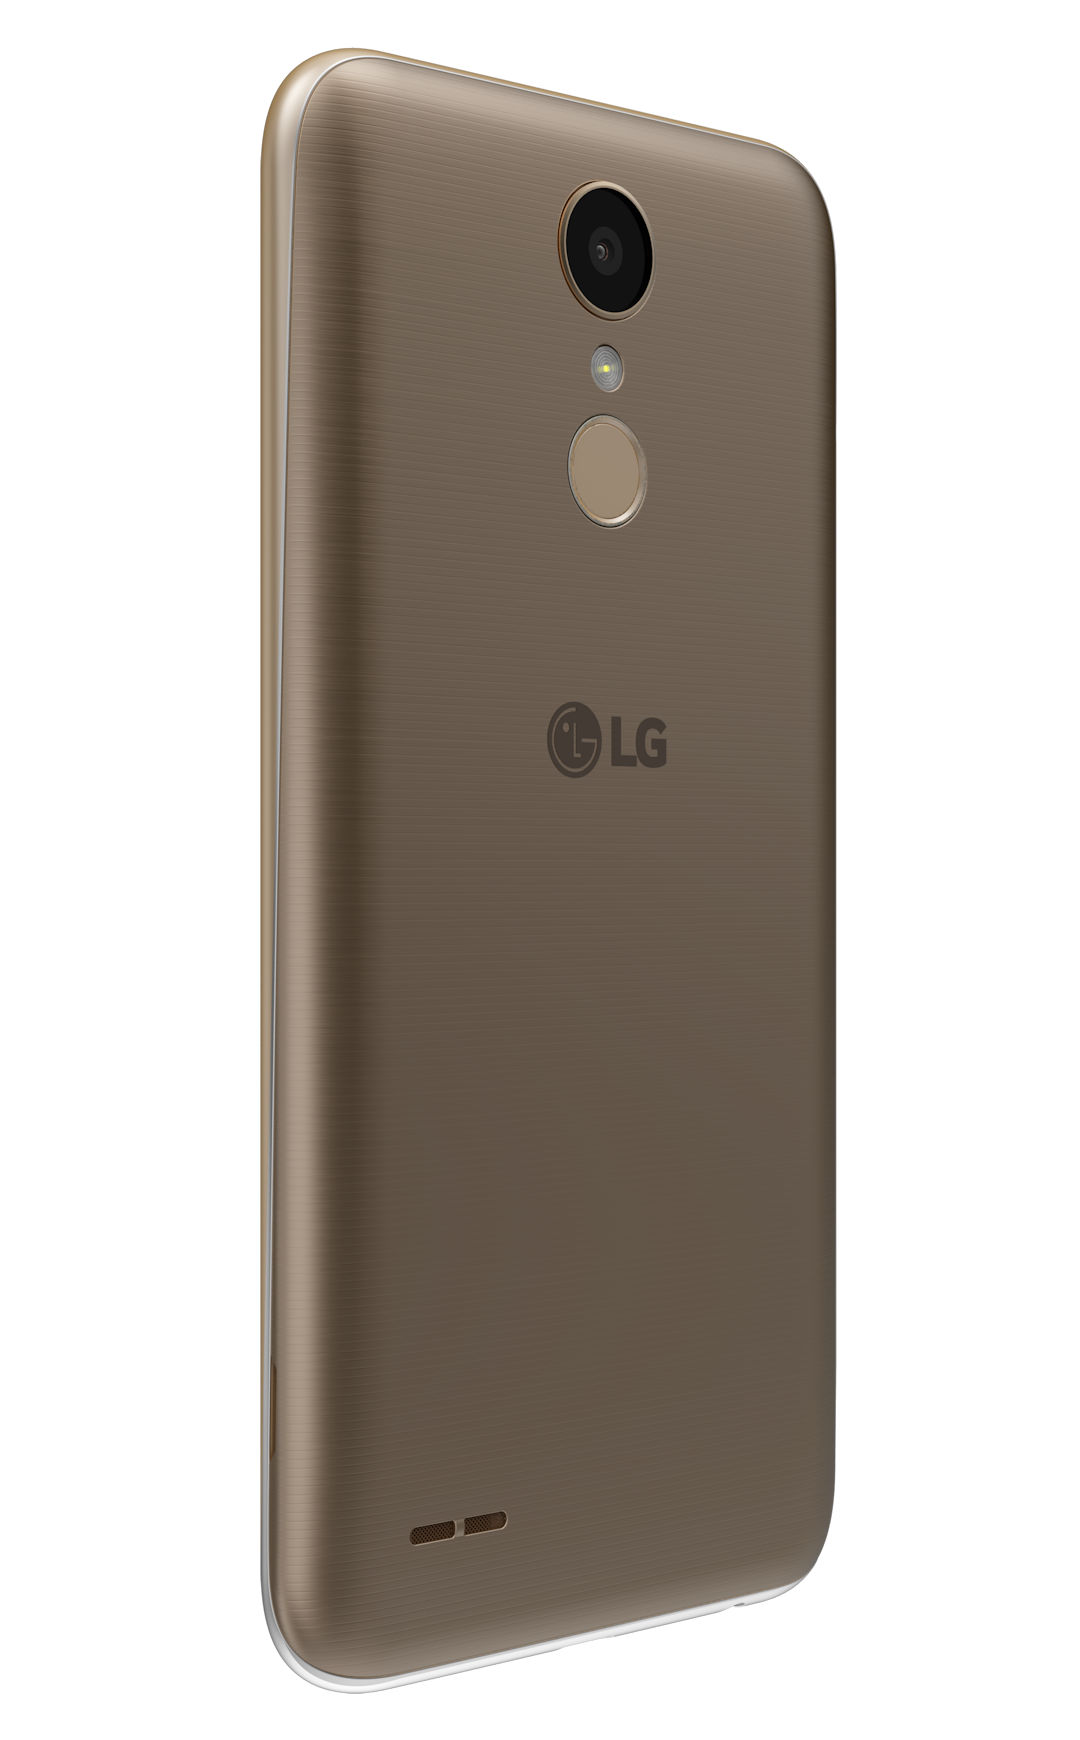 LG K10 2017